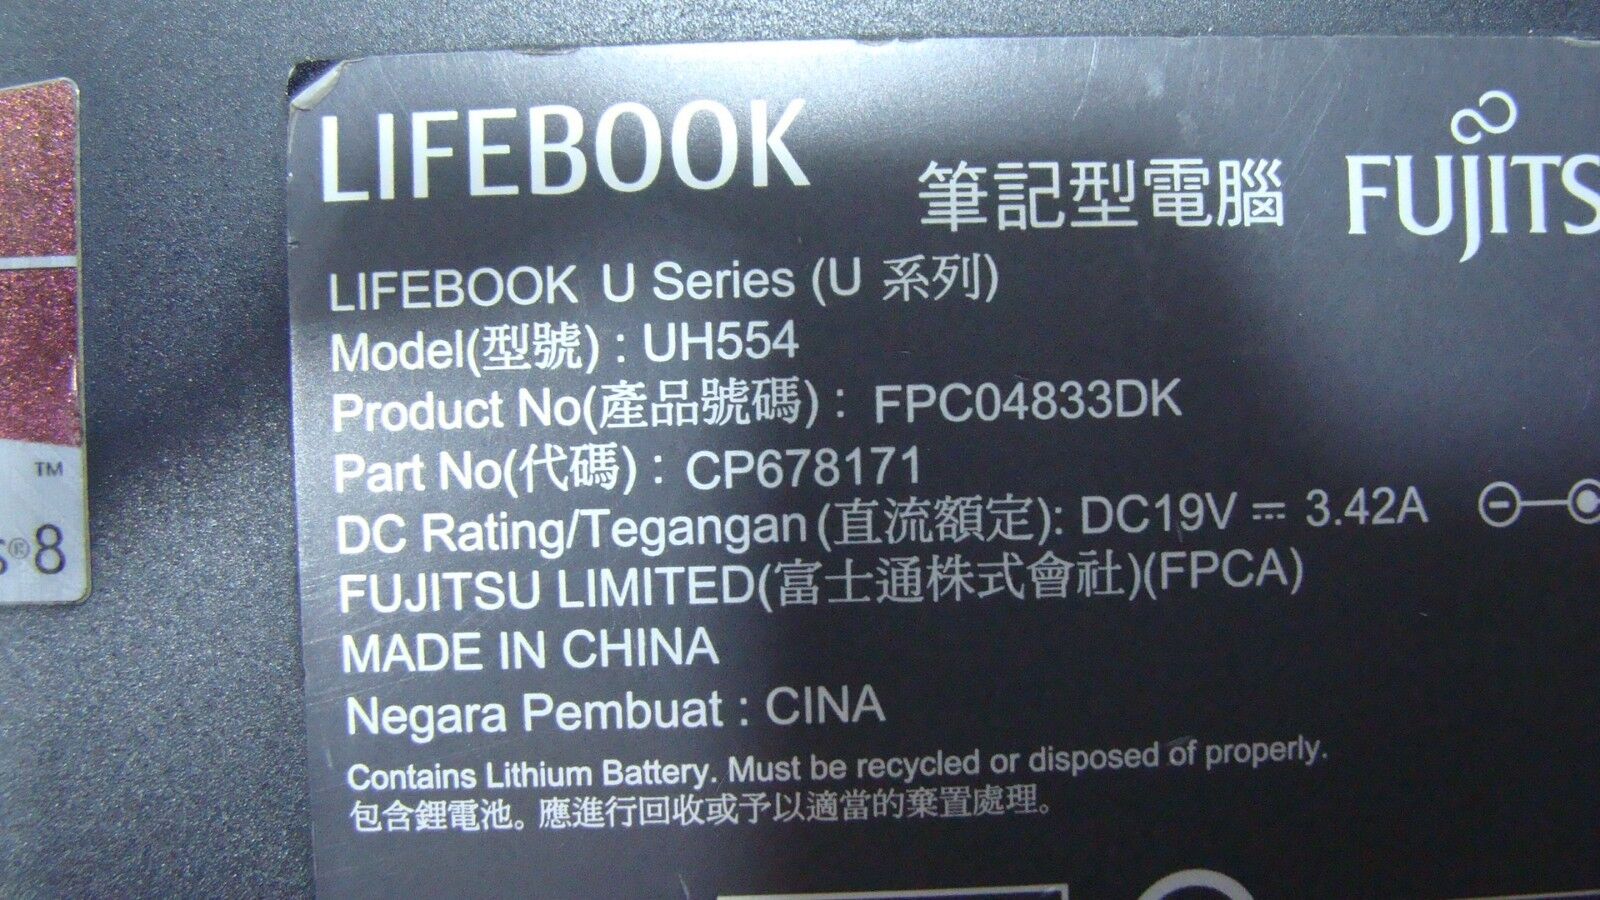 Fujitsu LifeBook 13.3 UH554 Bottom Case w/Cover Door Black 678171-01R4Y00440